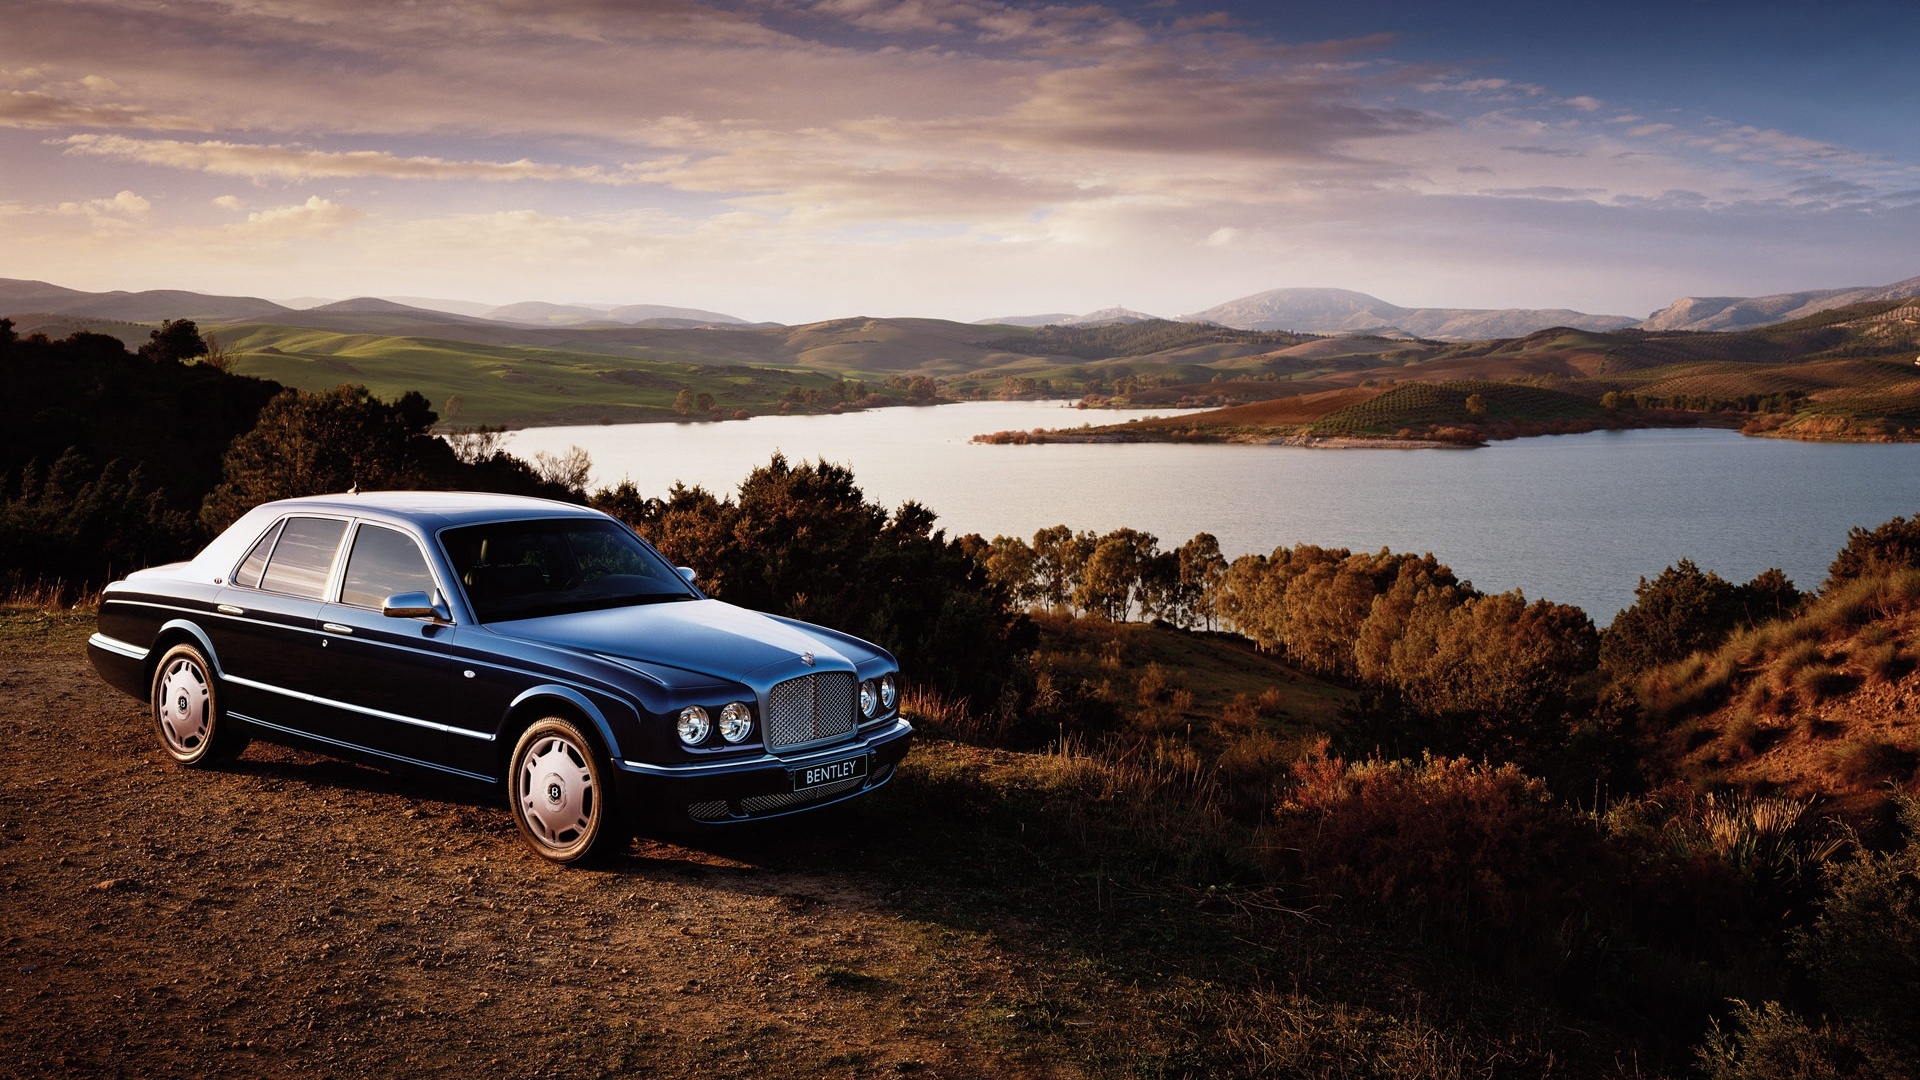 Vehicles Bentley HD Wallpaper | Background Image